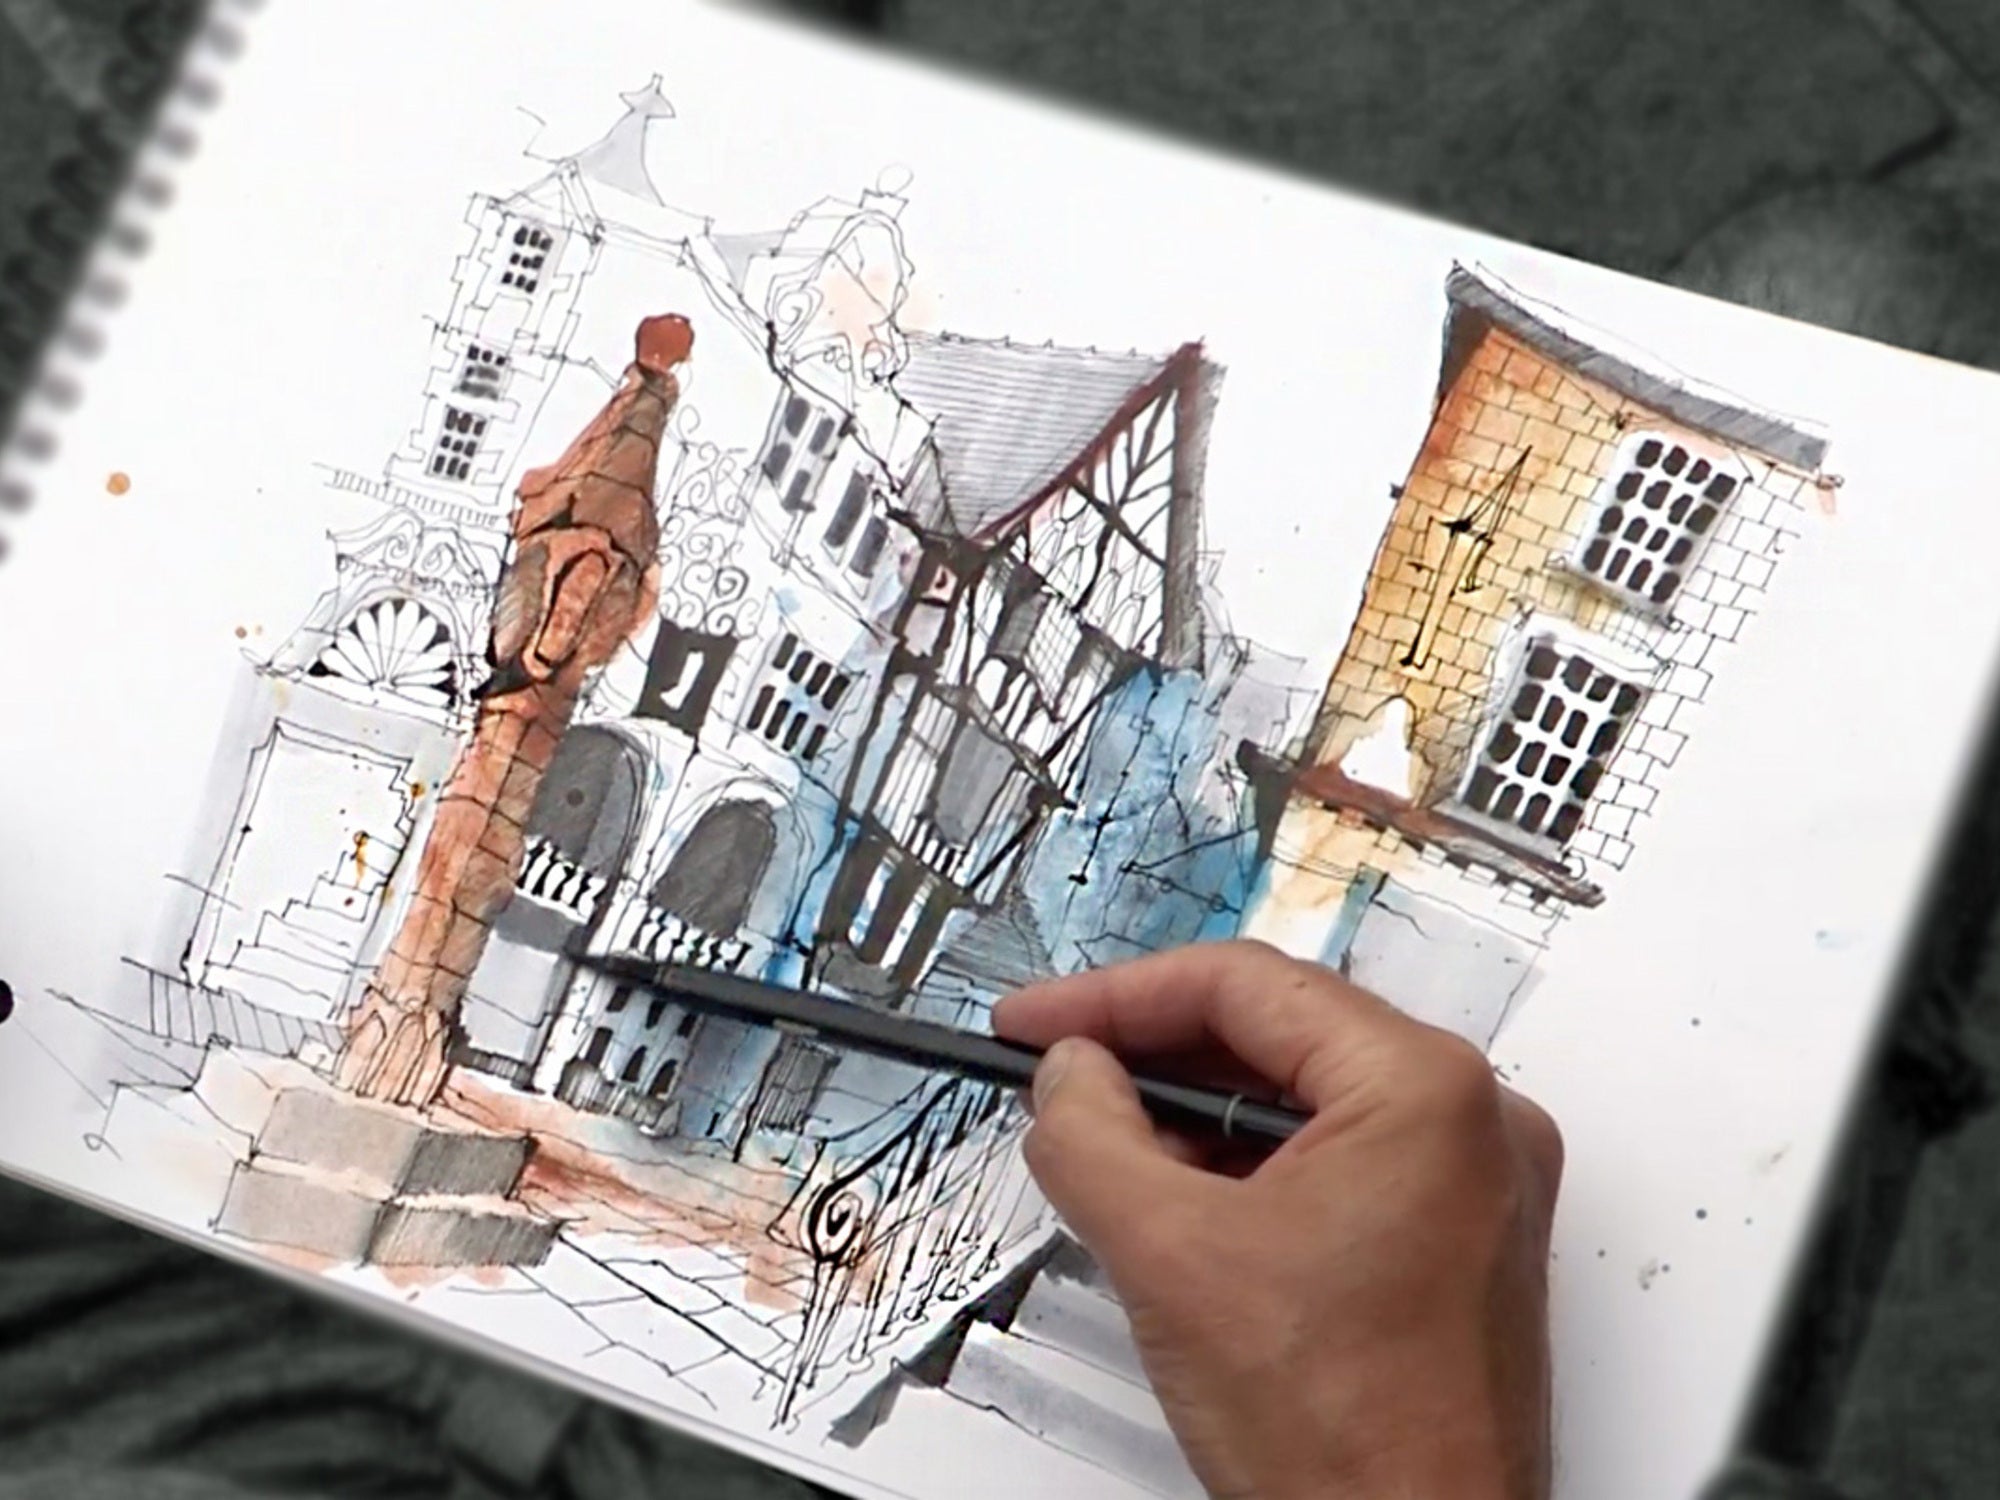 Aprende el arte del dibujo urbano con este curso de $40 dirigido por expertos